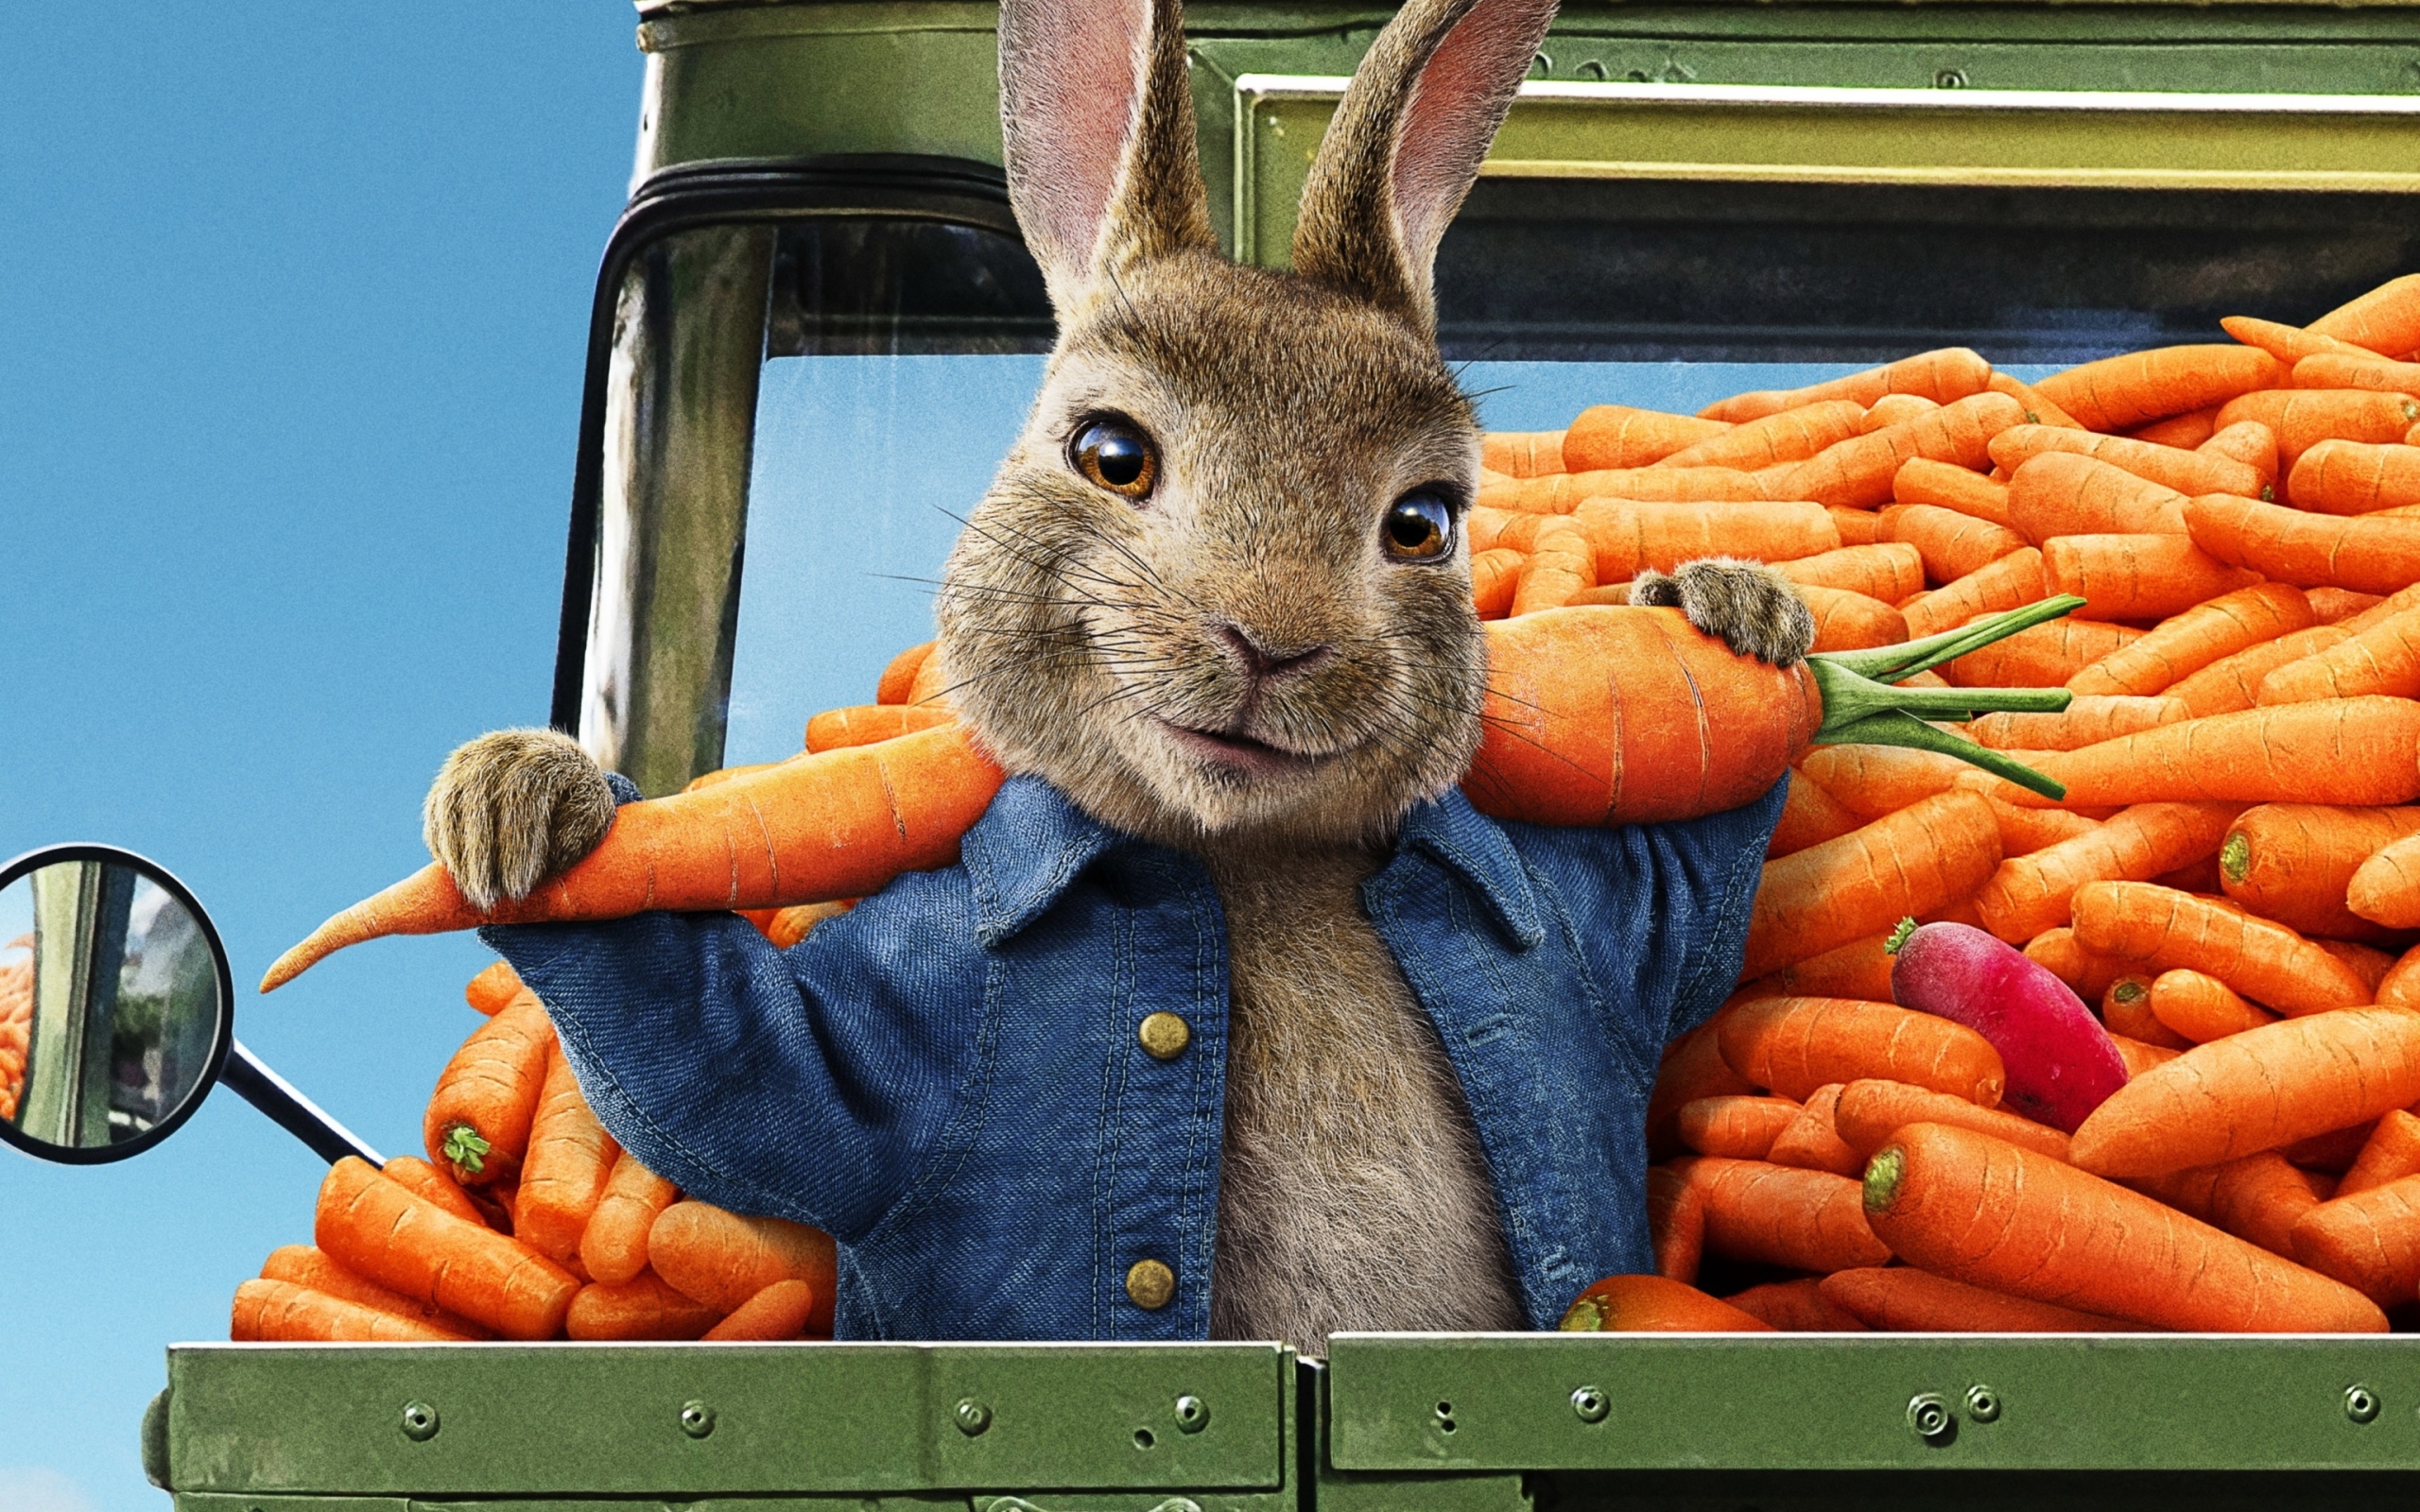 Peter Rabbit 2 The Runaway 2020 wallpaper 2560x1600